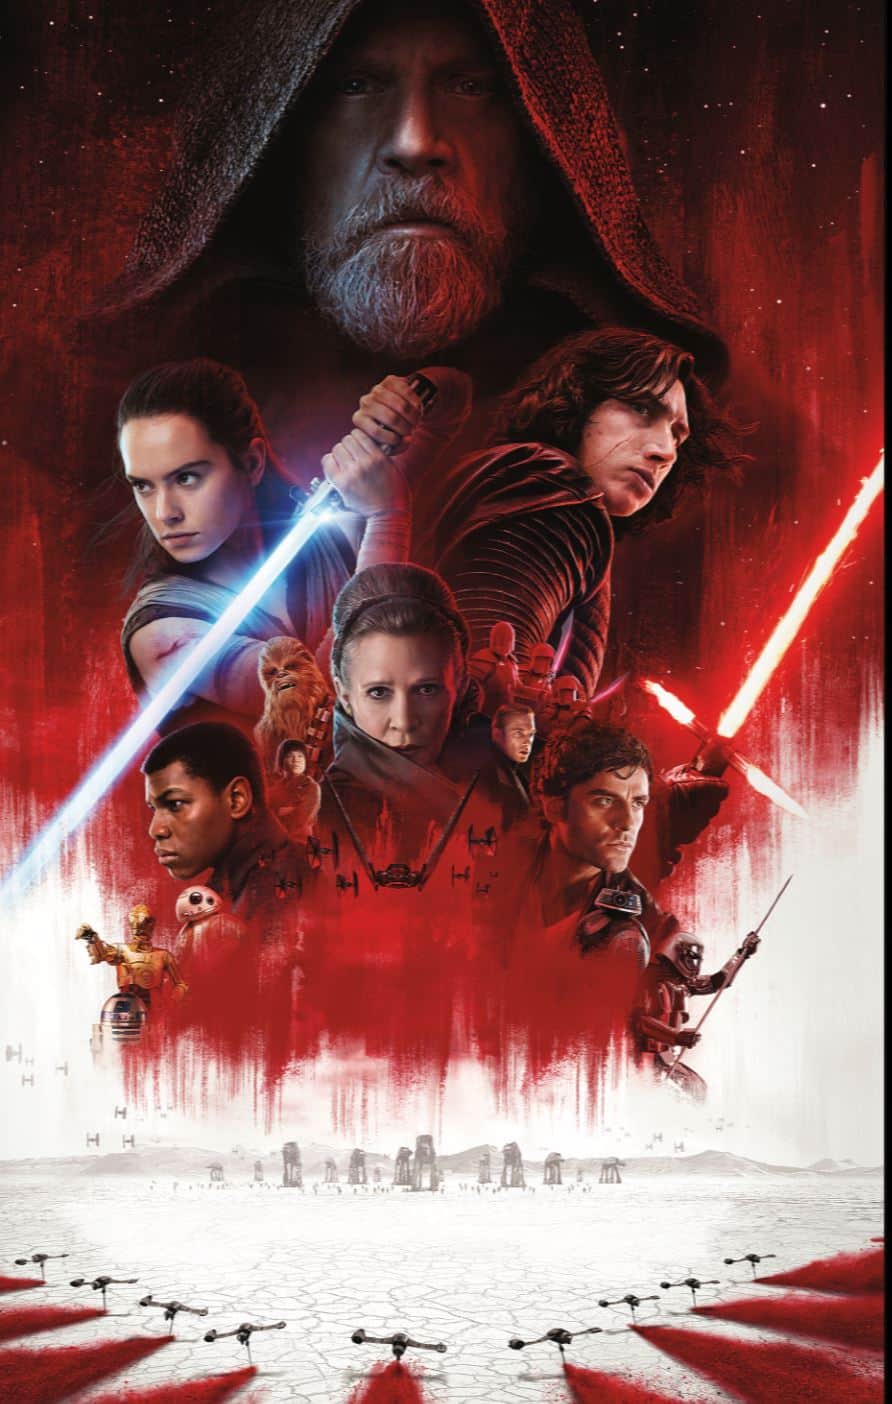 Star wars movie poster